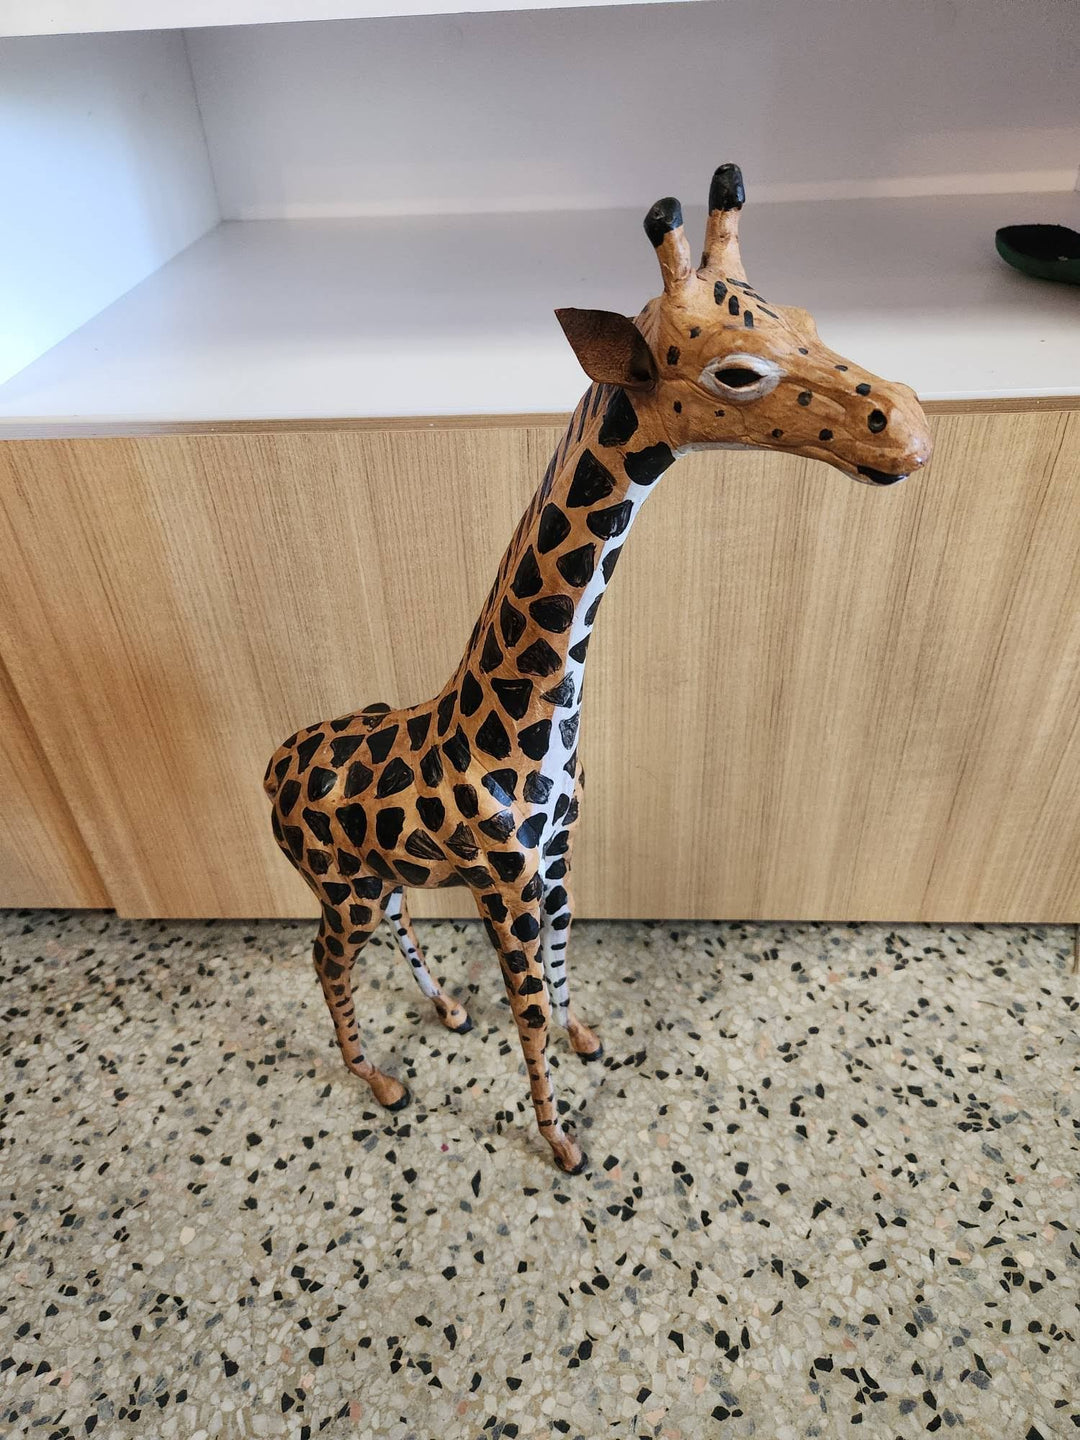 Giraffe statue, 20" tall